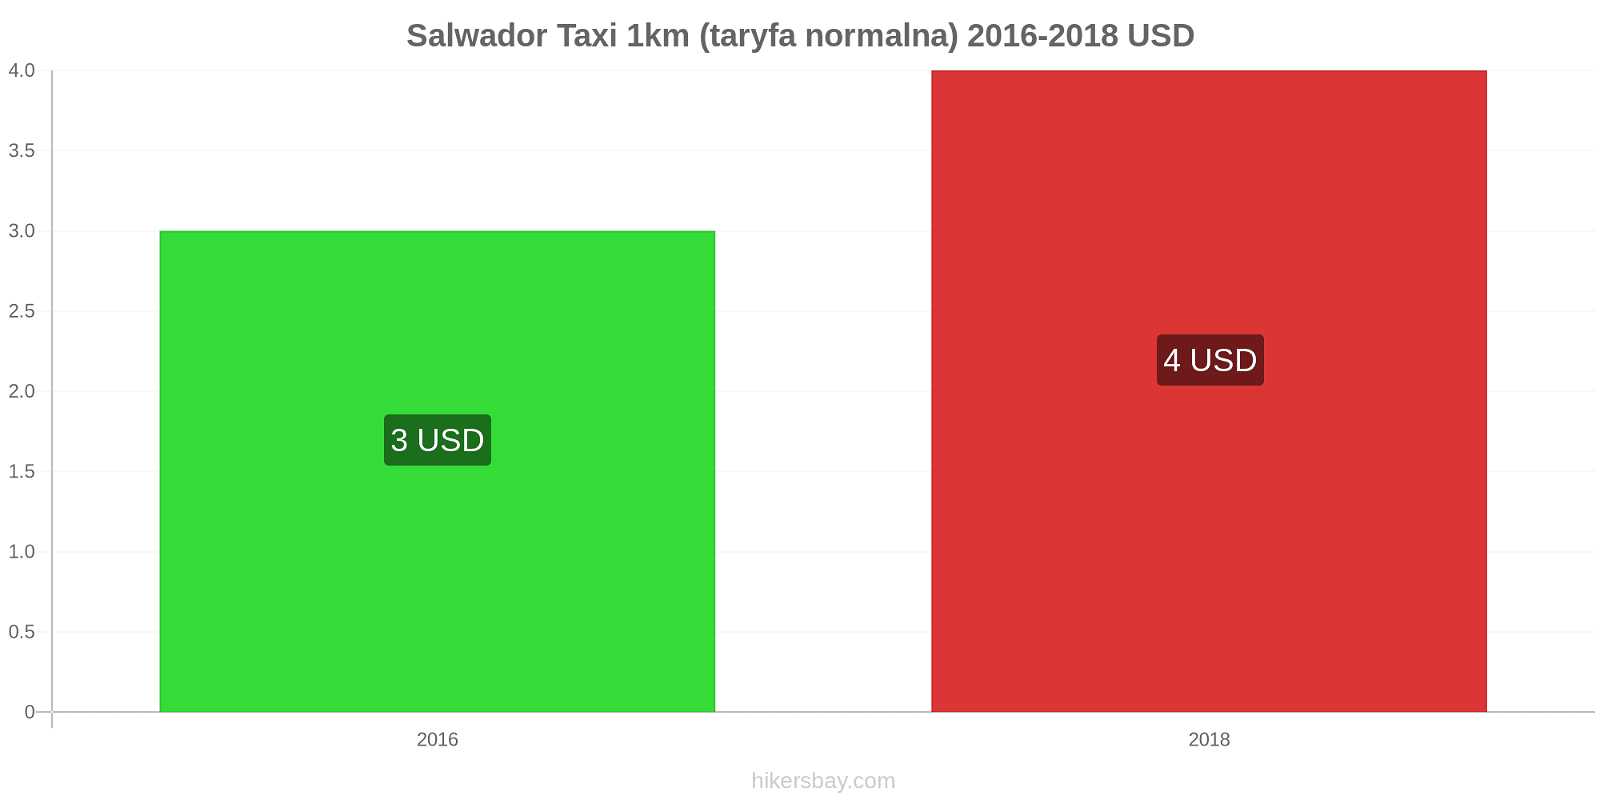 Salwador zmiany cen Taxi 1km (taryfa normalna) hikersbay.com